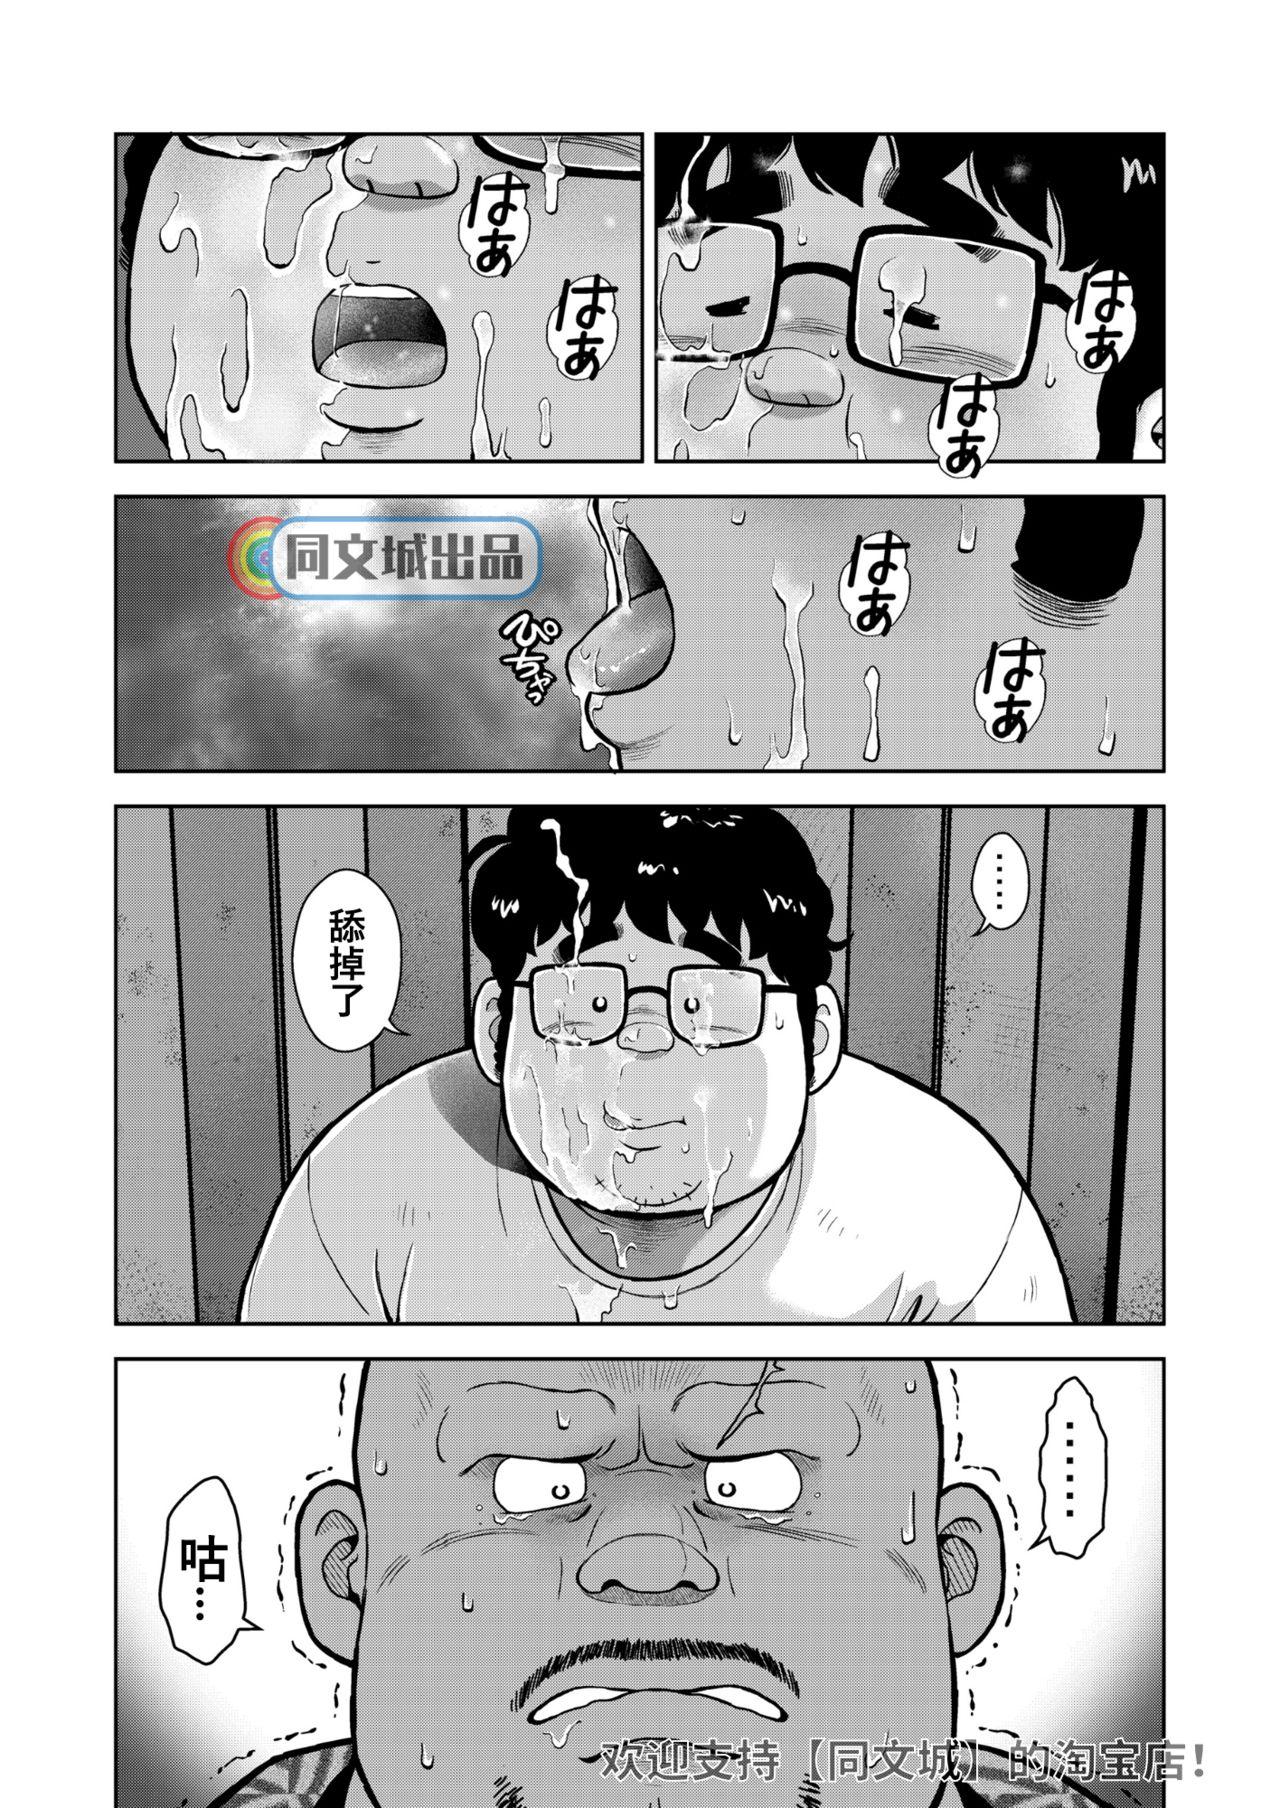 Furry kunoyu jyuuhatihatsume otoko no kunsyou Ruiva - Page 29